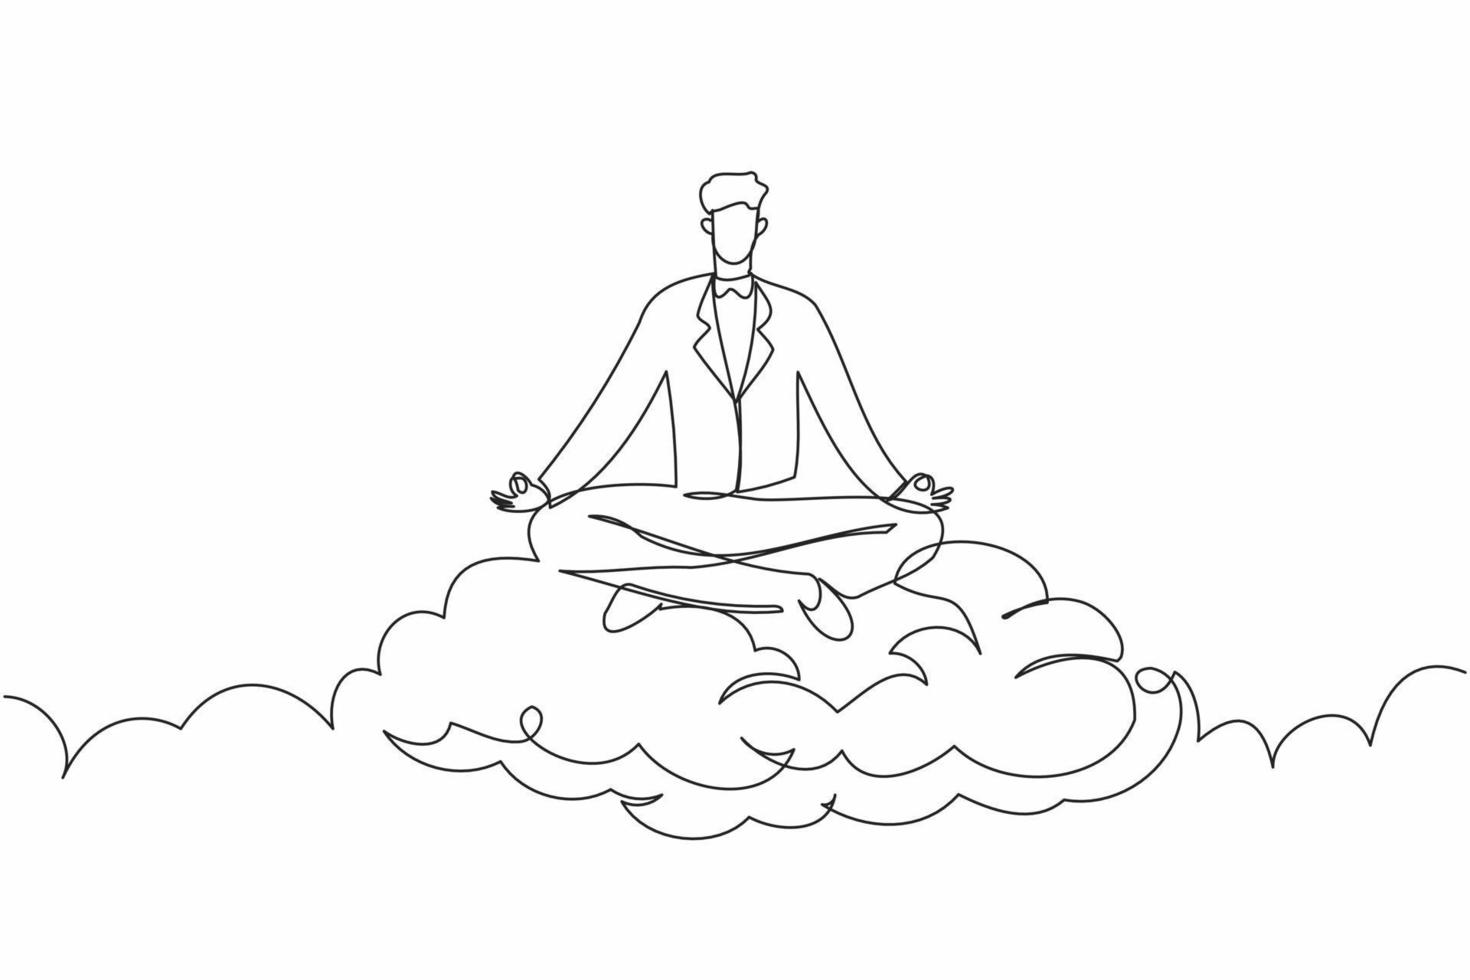 Single One Line Drawing Junger Geschäftsmann entspannt sich und meditiert im Lotussitz auf Wolken. friedlicher mann, der sich mit yoga oder meditationshaltung entspannt. ununterbrochene Linie zeichnen grafische Vektorillustration des Designs vektor